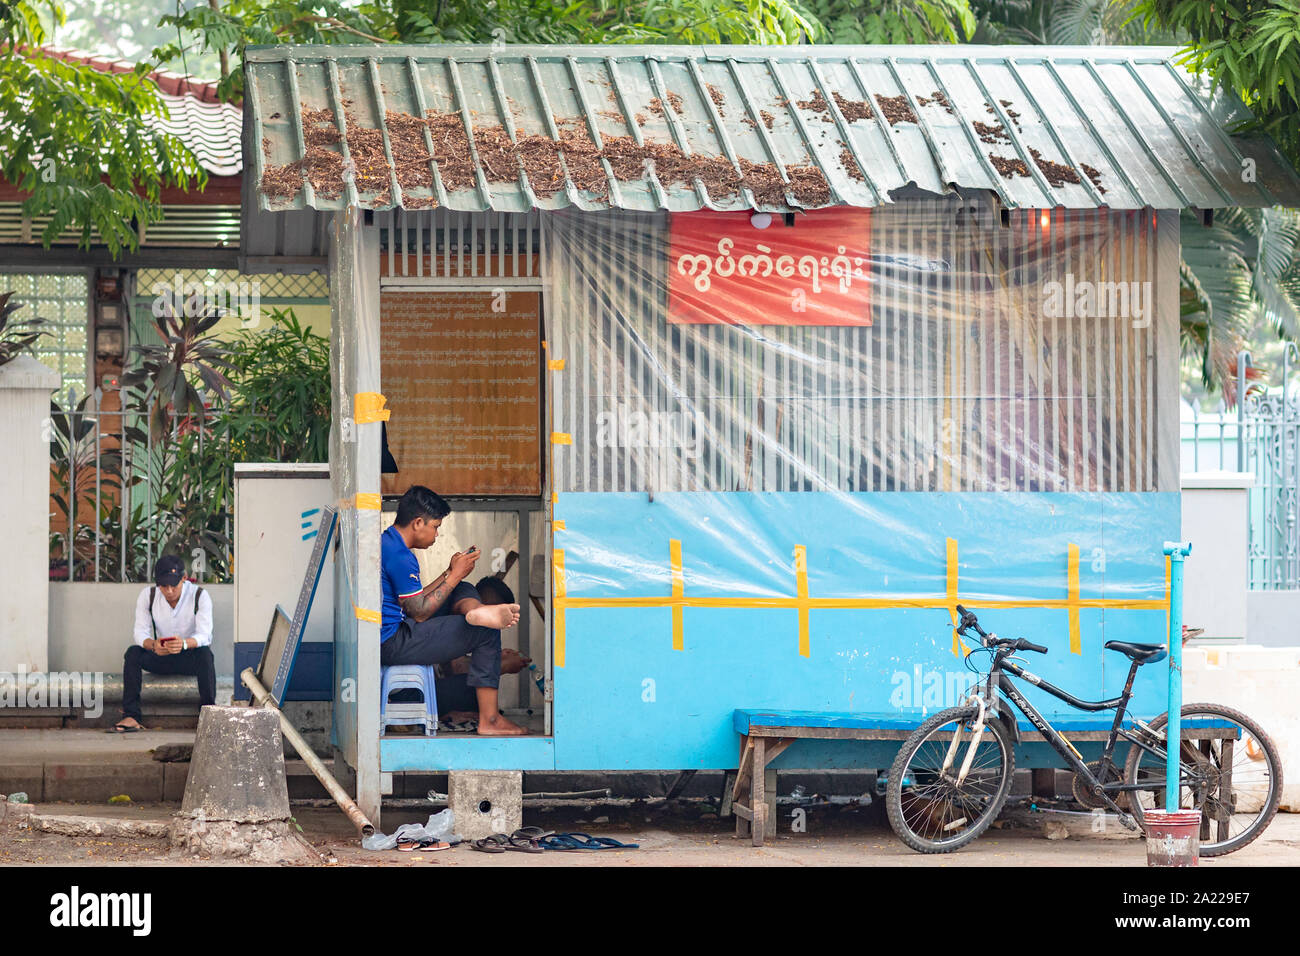 Die Menschen auf der Straße von Yangon mit zellulären Mobil Telefon. Armes Land und moderne Technik Konzept. Moderne Kommunikations-Technologie in der Dritten Welt. Stockfoto